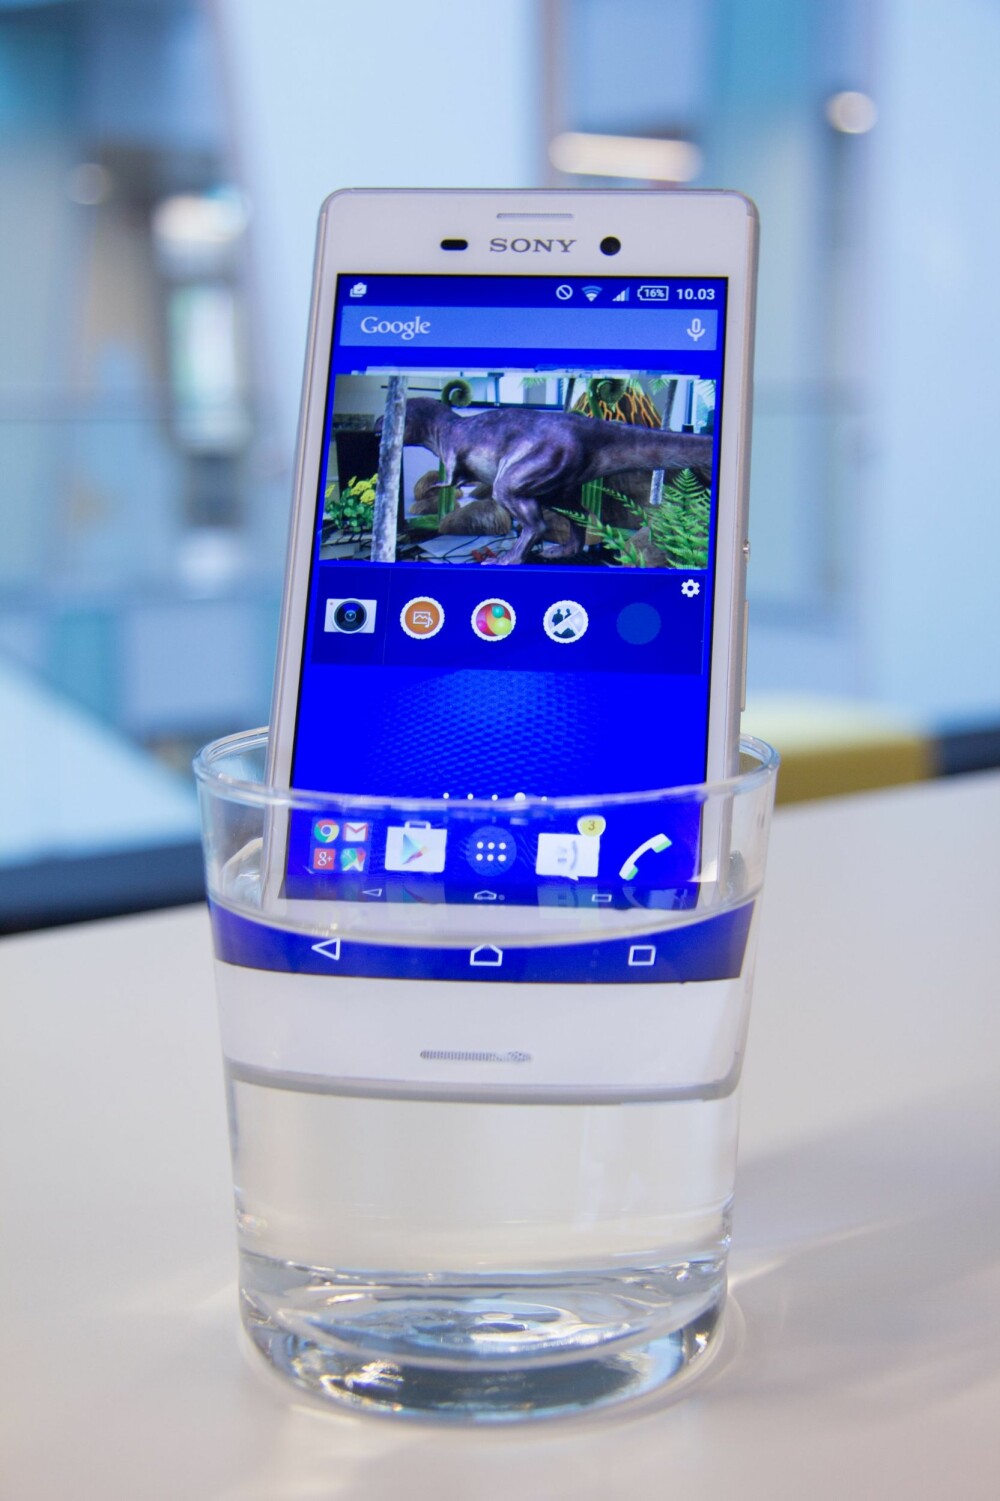 VANNTETT: Du trenger ikke være redd for å bruke Xperia M4 Aqua utendørs i sommerregnet. Telefonen er vanntett.